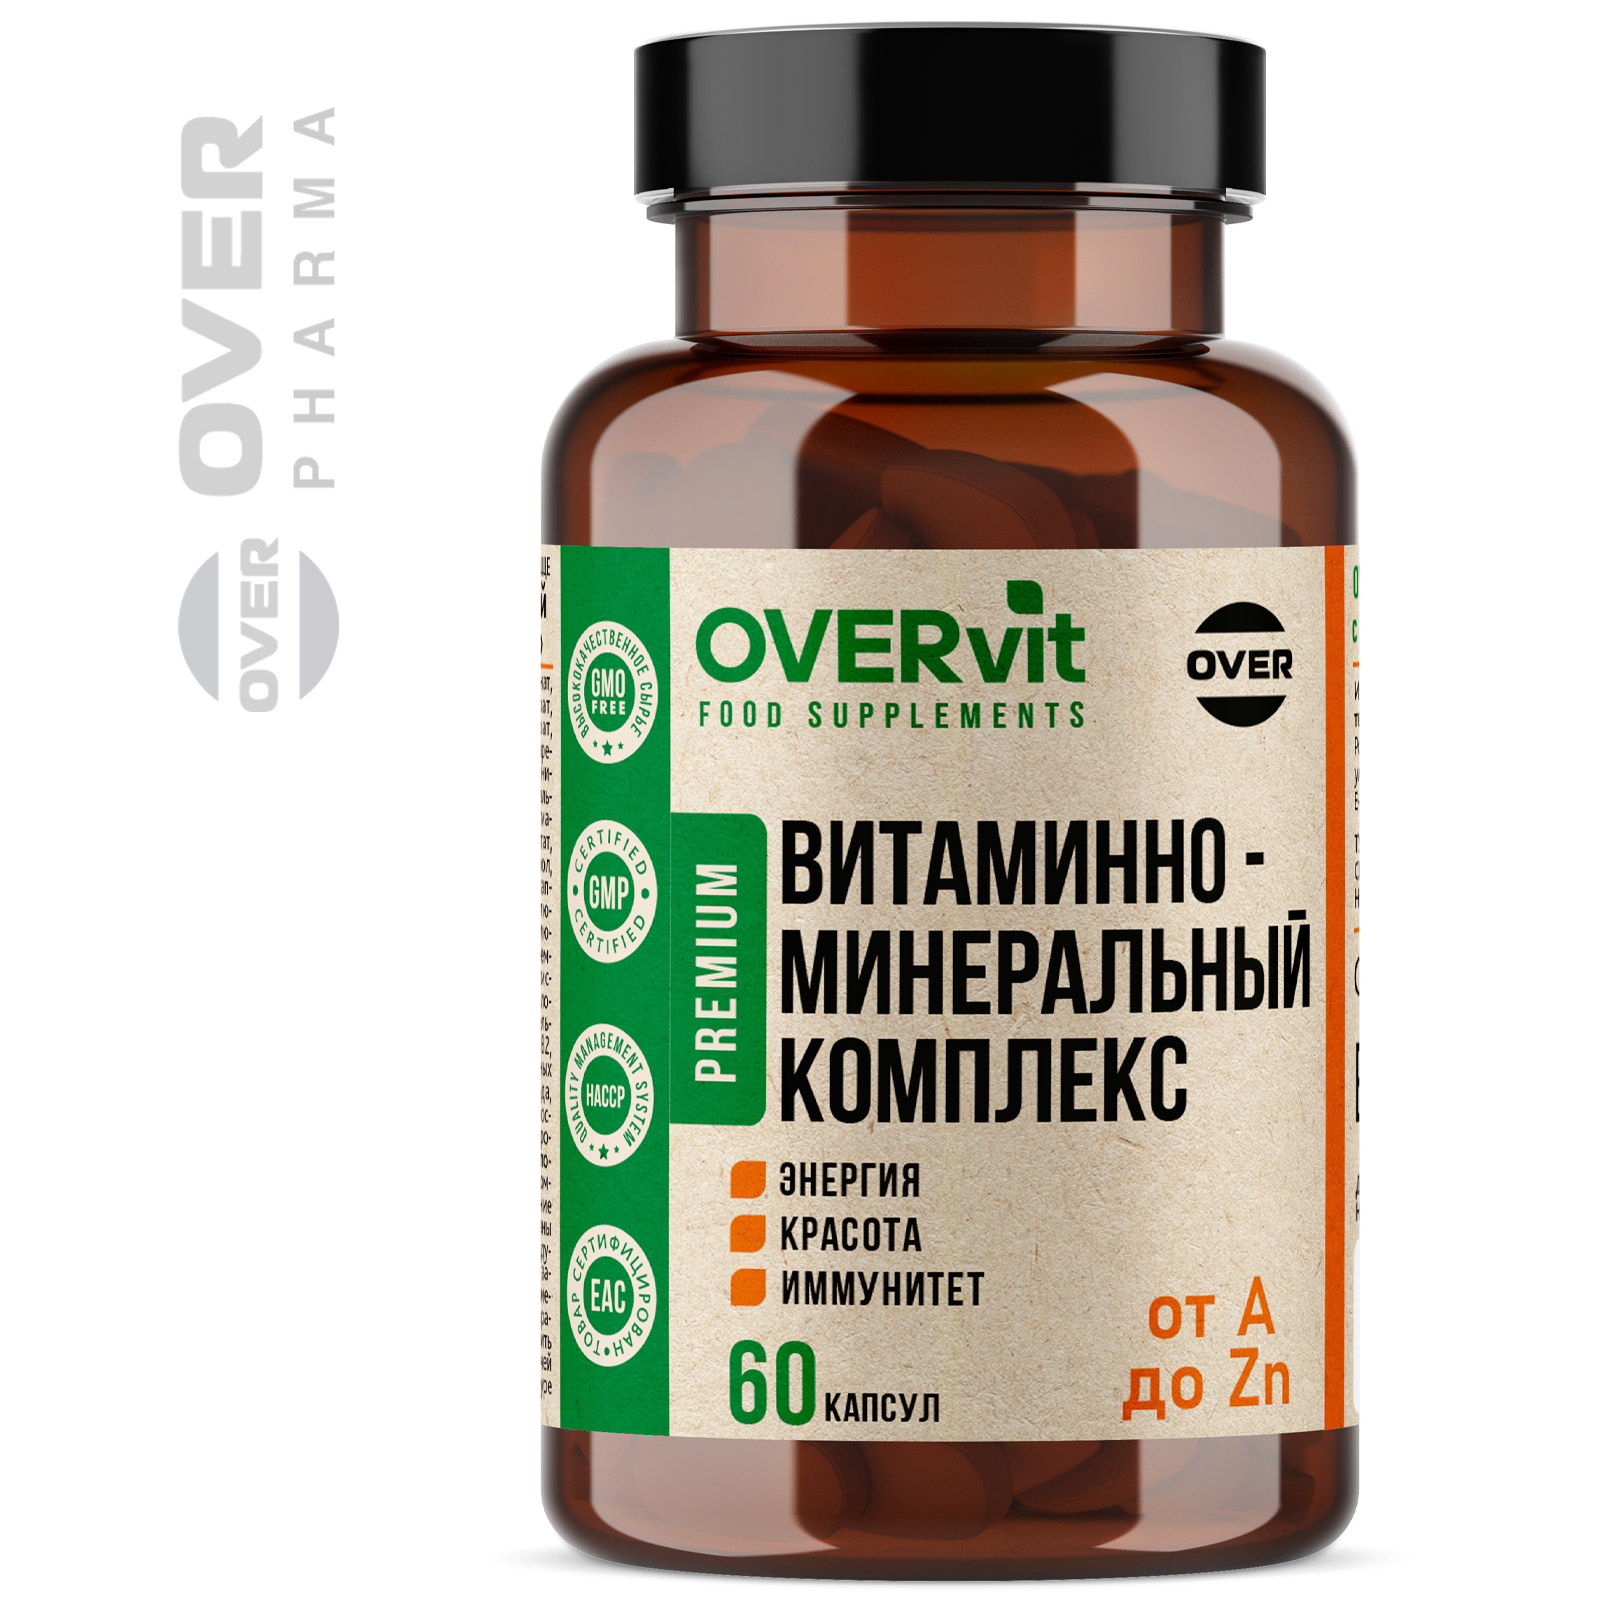 Витаминно-минеральный комплекс, мультивитамины для женщин и мужчин, 60 капсул